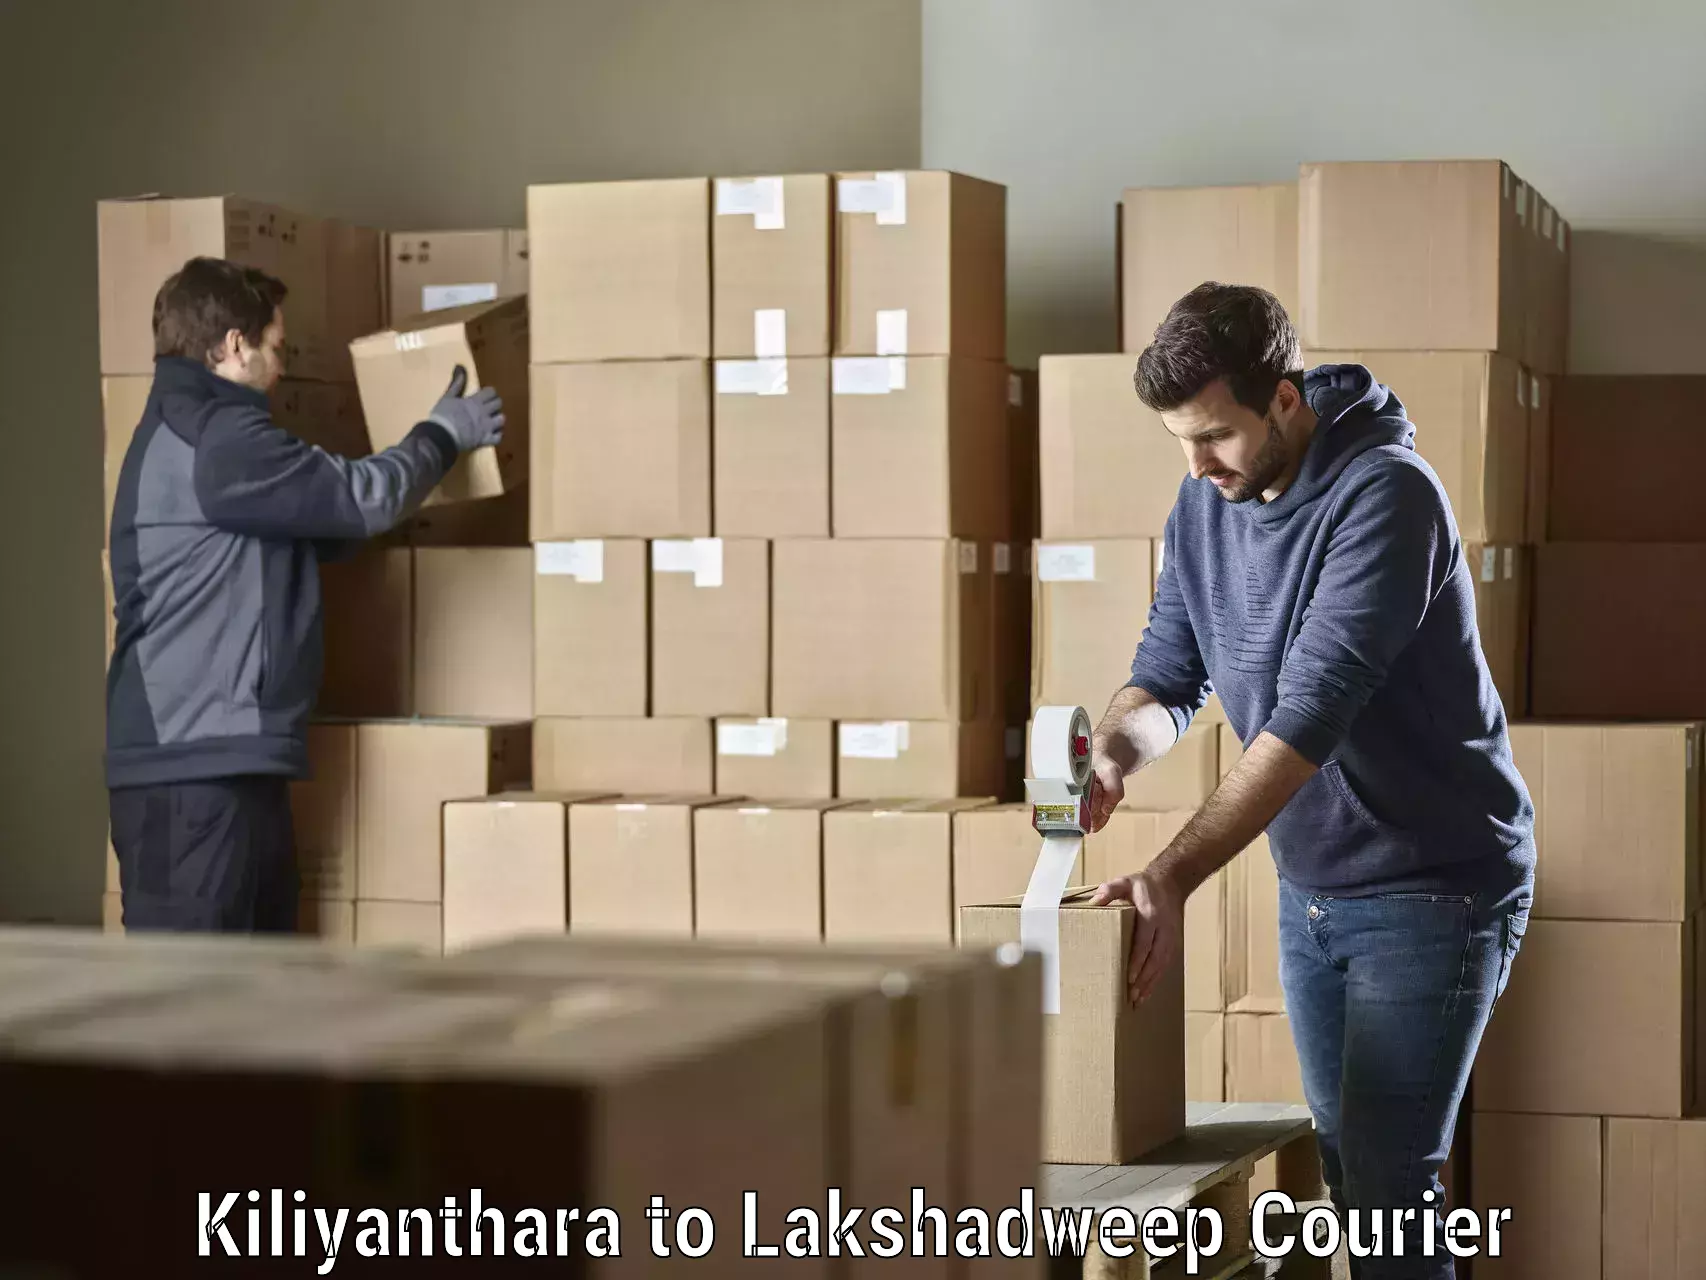 Express logistics providers Kiliyanthara to Lakshadweep